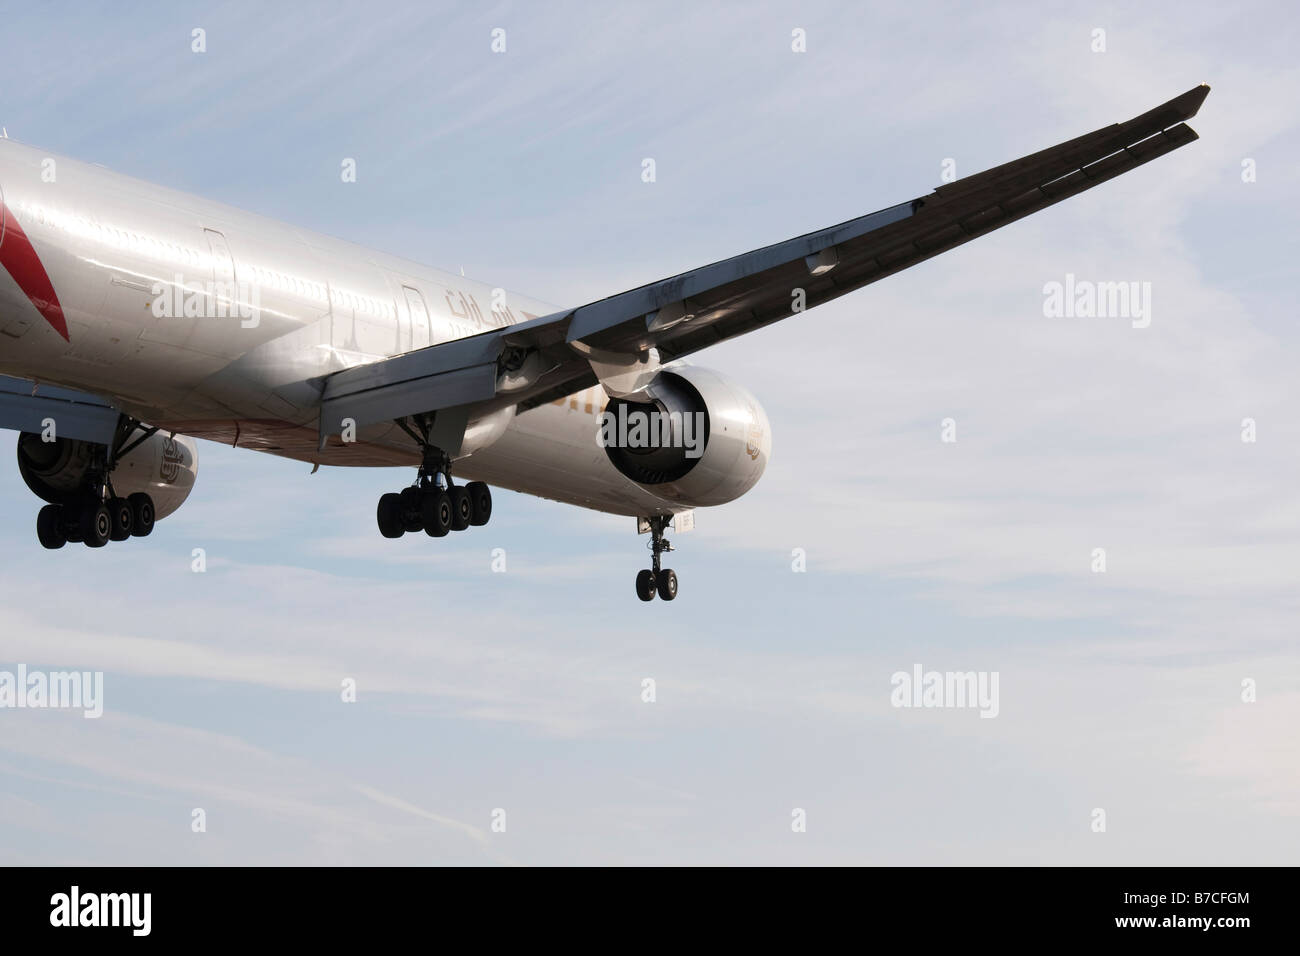 Emirate-Verkehrsflugzeug Boeing 777 300 im Endanflug zu landen Stockfoto